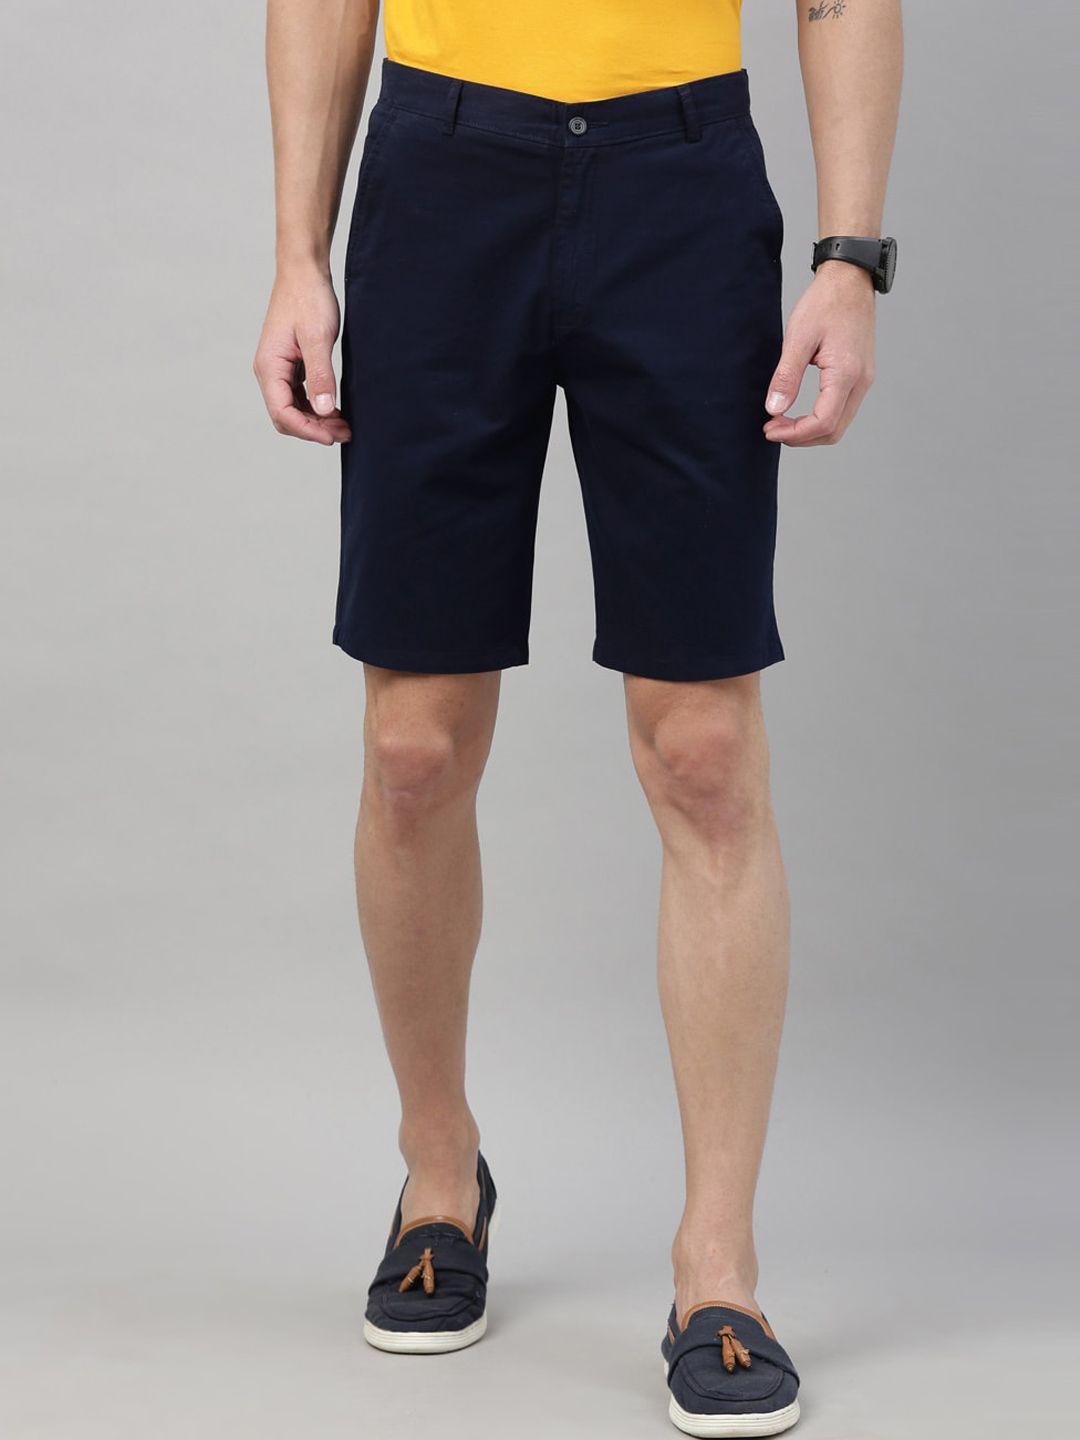 bushirt men navy blue solid regular fit regular shorts